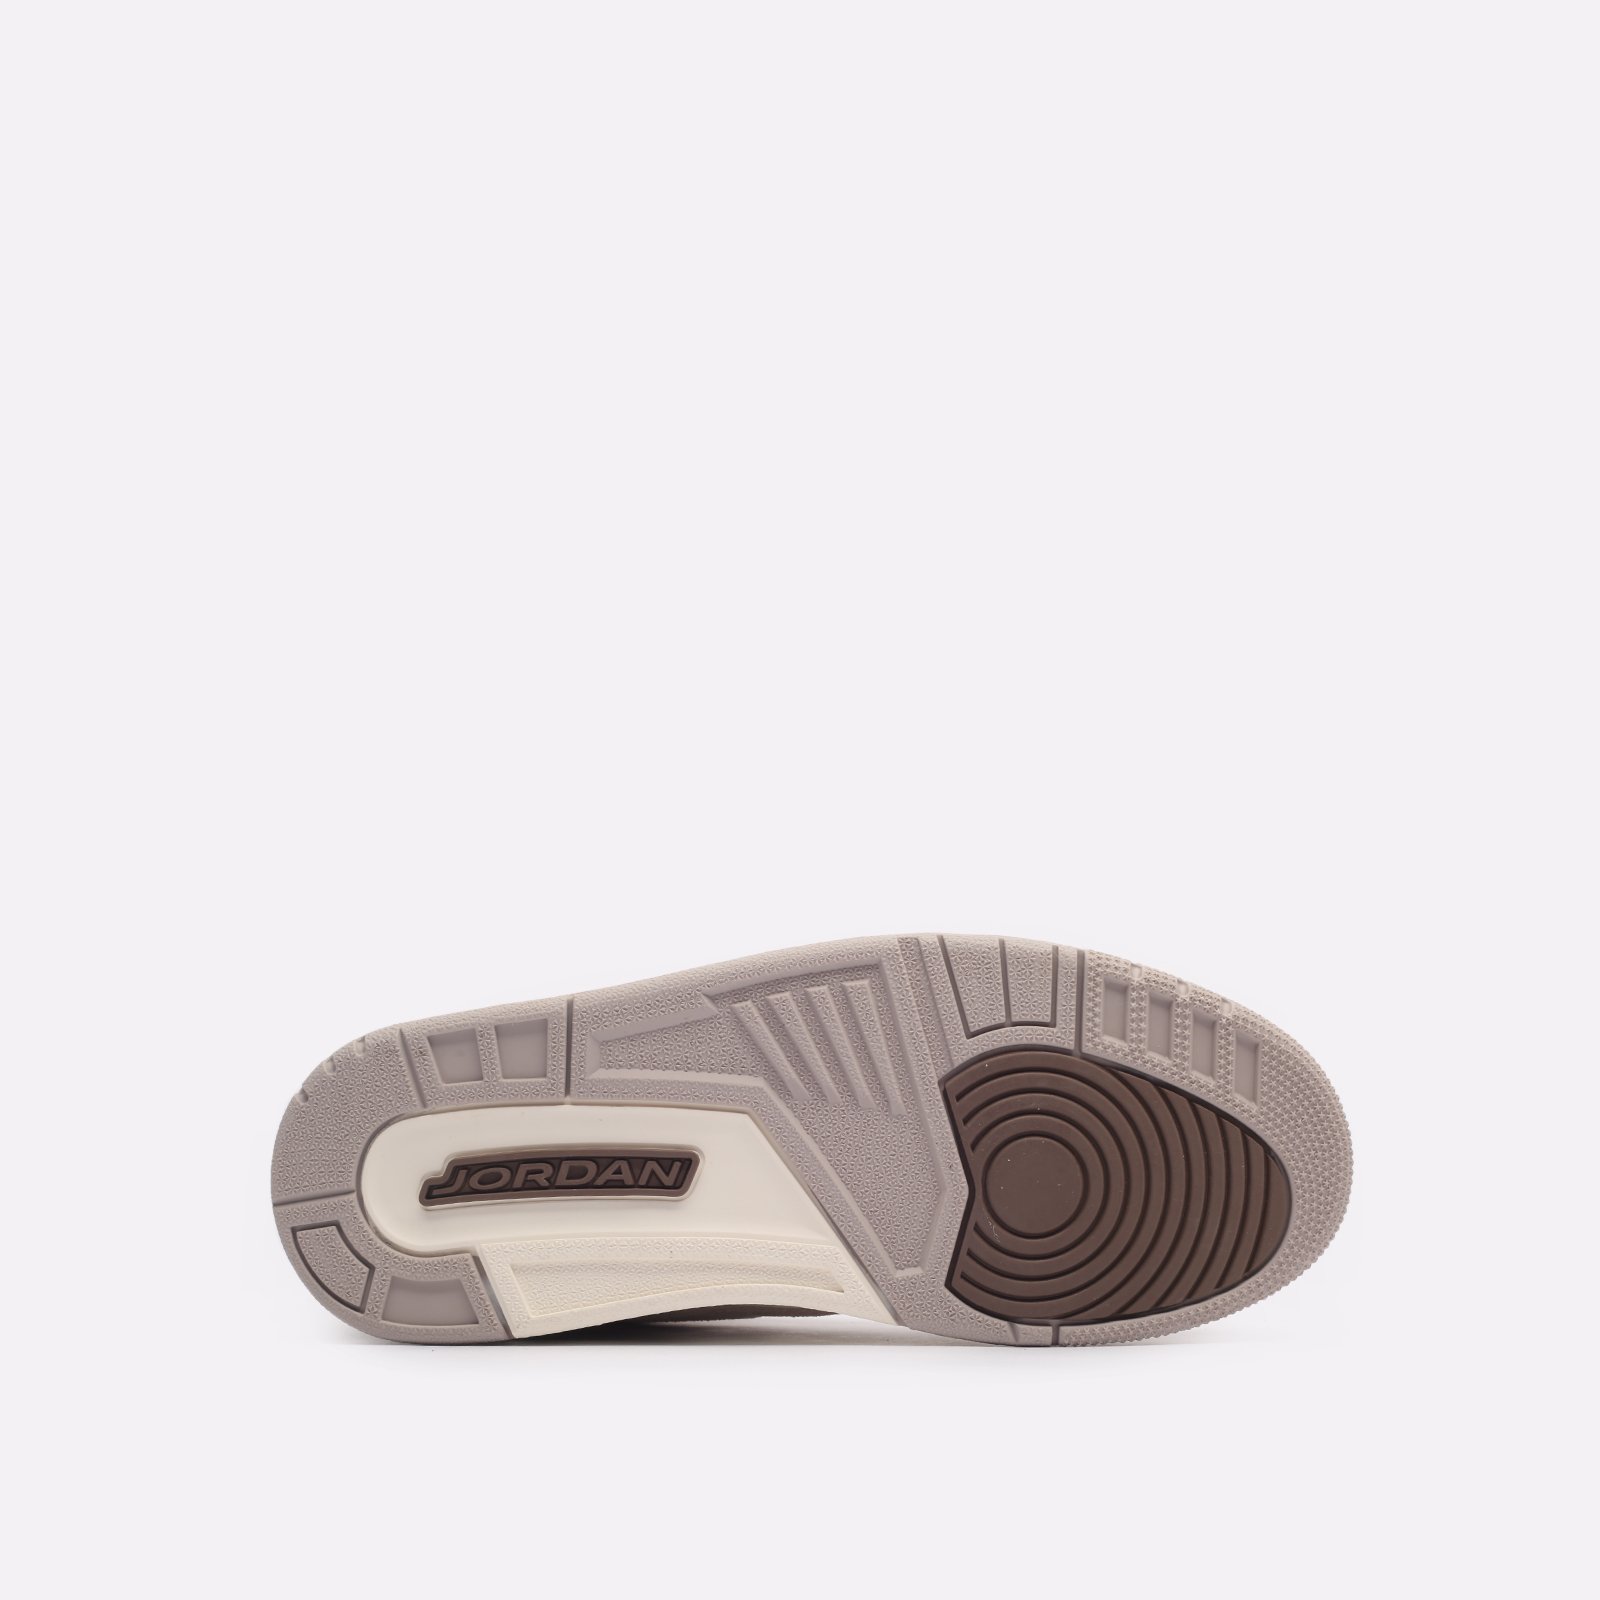 мужские бежевые кроссовки Jordan 3 Retro CT8532-102 - цена, описание, фото 5